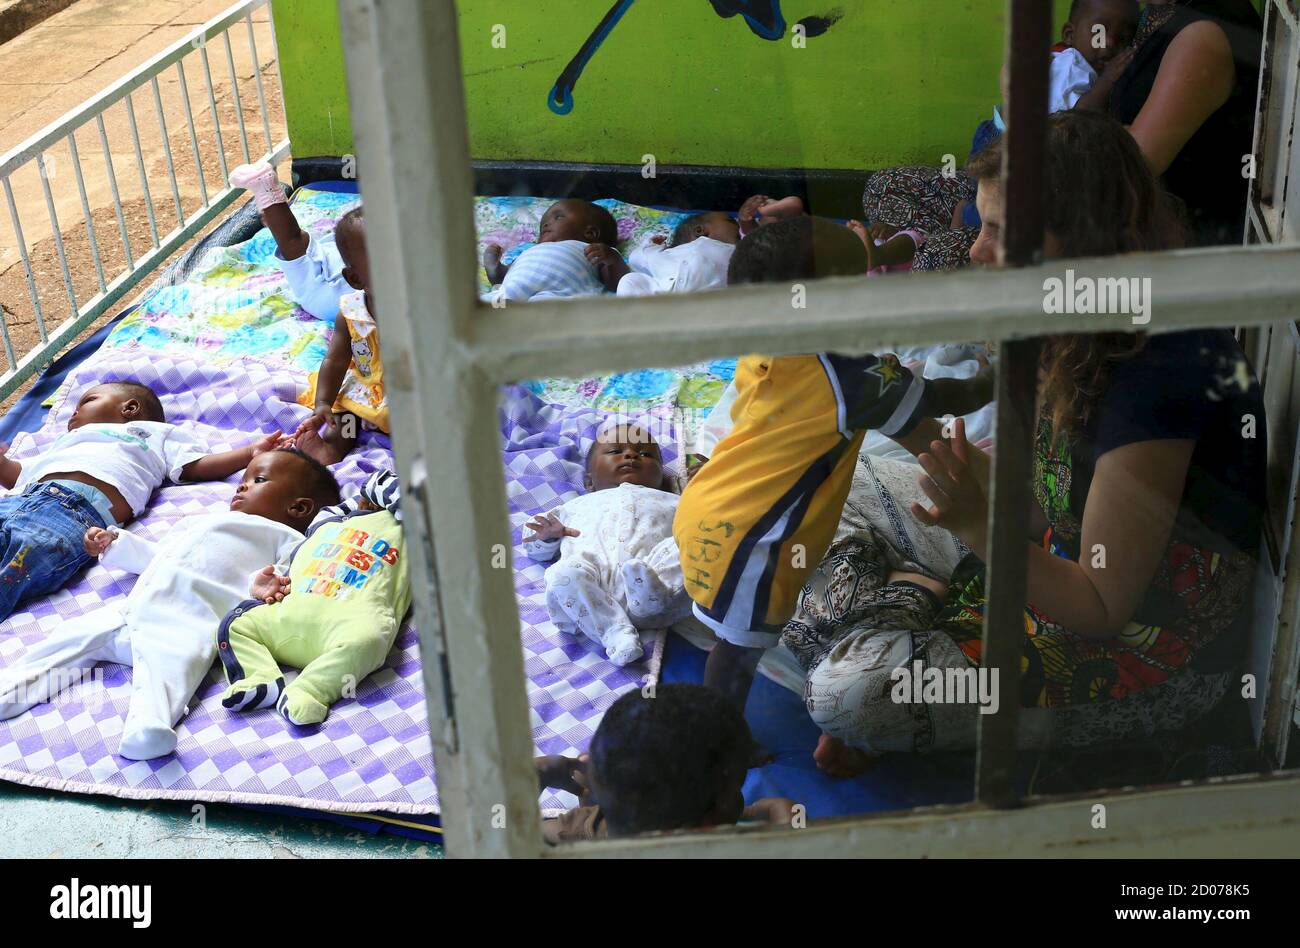 Voluntarios extranjeros juegan con niños abandonados en una casa en la capital de Uganda, Kampala, 14 de mayo de 2015. Las familias ugandesas han sido sobornadas, engañadas o coaccionadas para entregar a sus hijos a ciudadanos estadounidenses y otros extranjeros para su adopción, según una investigación de la Fundación Thomson Reuters. Foto tomada el 14 de mayo de 2015. REUTERS/James Akena Foto de stock